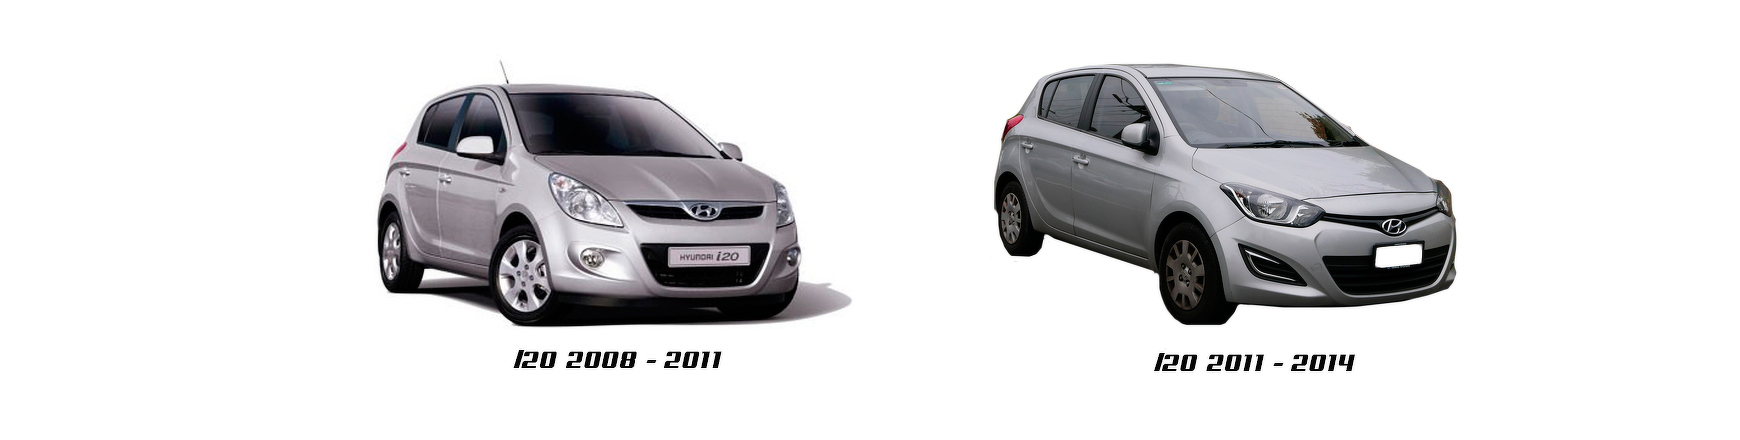 Piezas y Recambios de Hyundai i20 (PB) de 2012 a 2014 | Veramauto.es